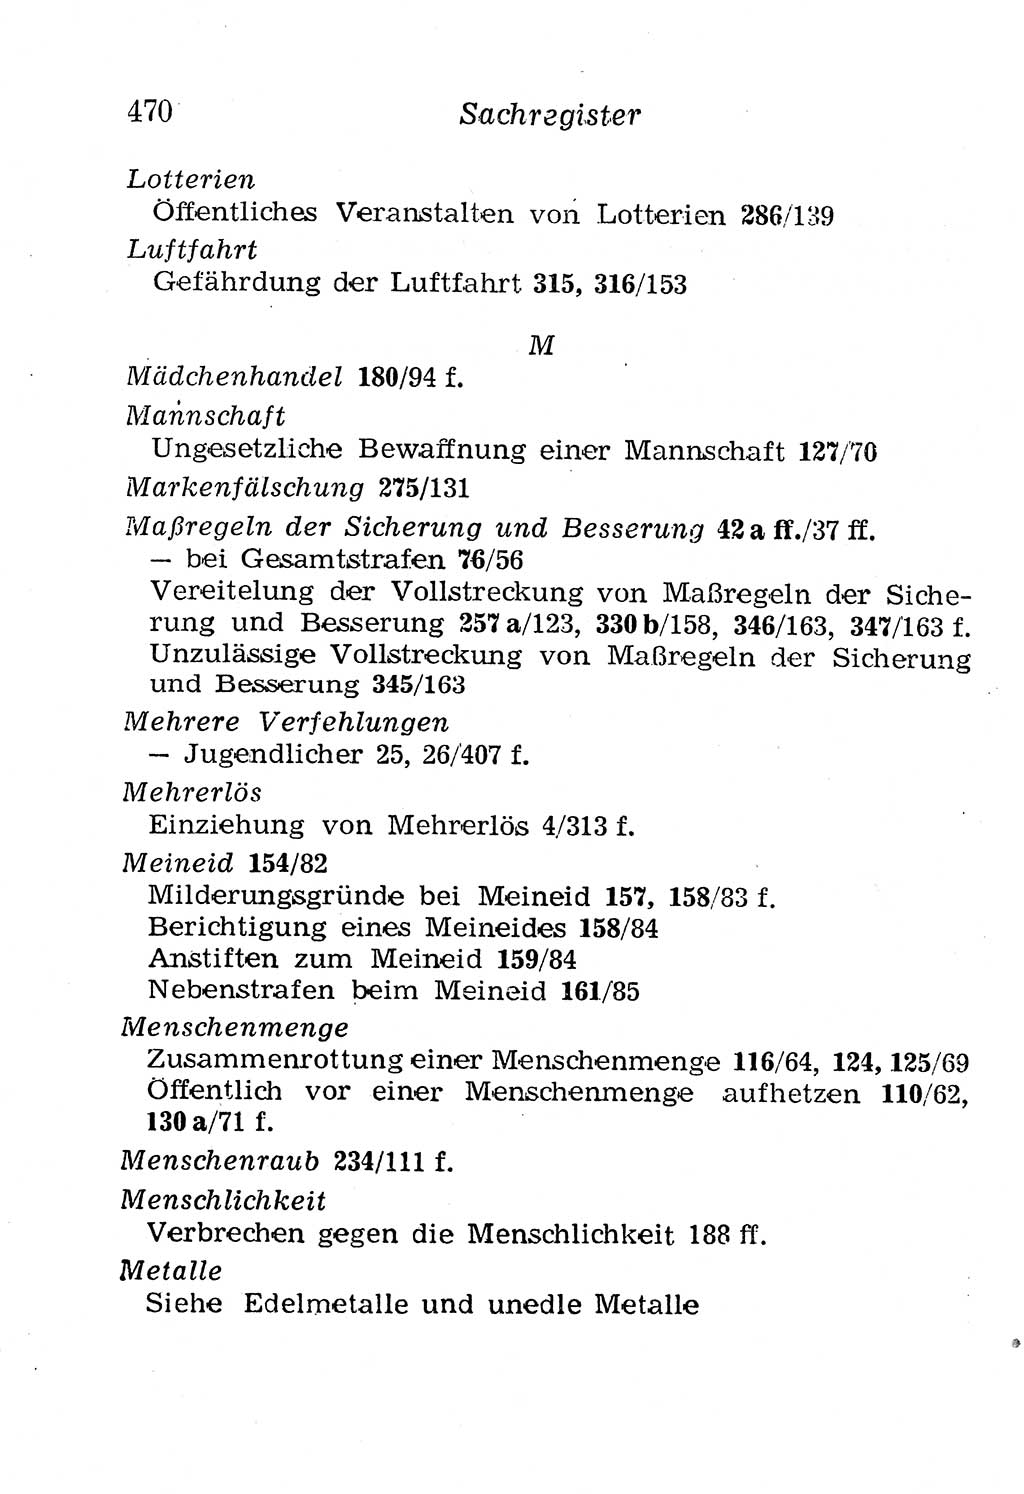 Strafgesetzbuch (StGB) und andere Strafgesetze [Deutsche Demokratische Republik (DDR)] 1958, Seite 470 (StGB Strafges. DDR 1958, S. 470)